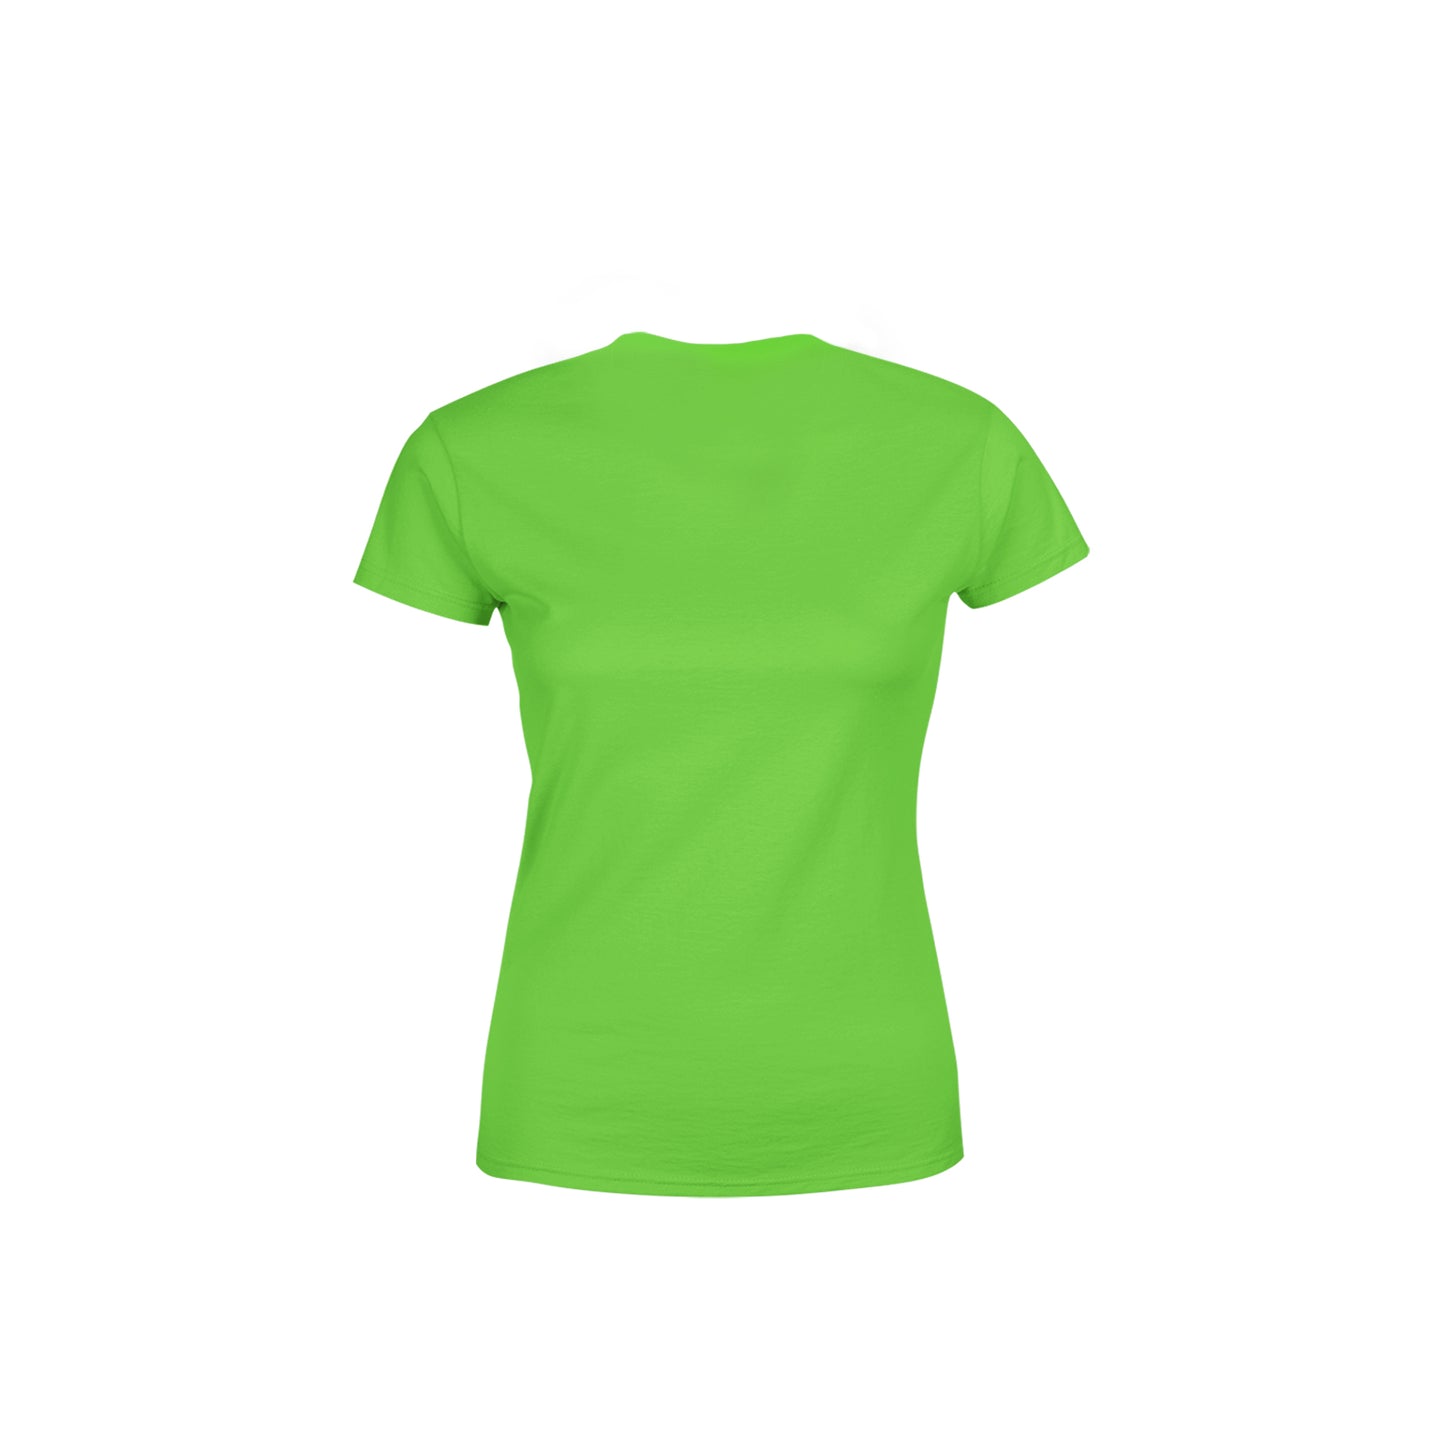 50 Number Women's T-Shirt (Liril Green)